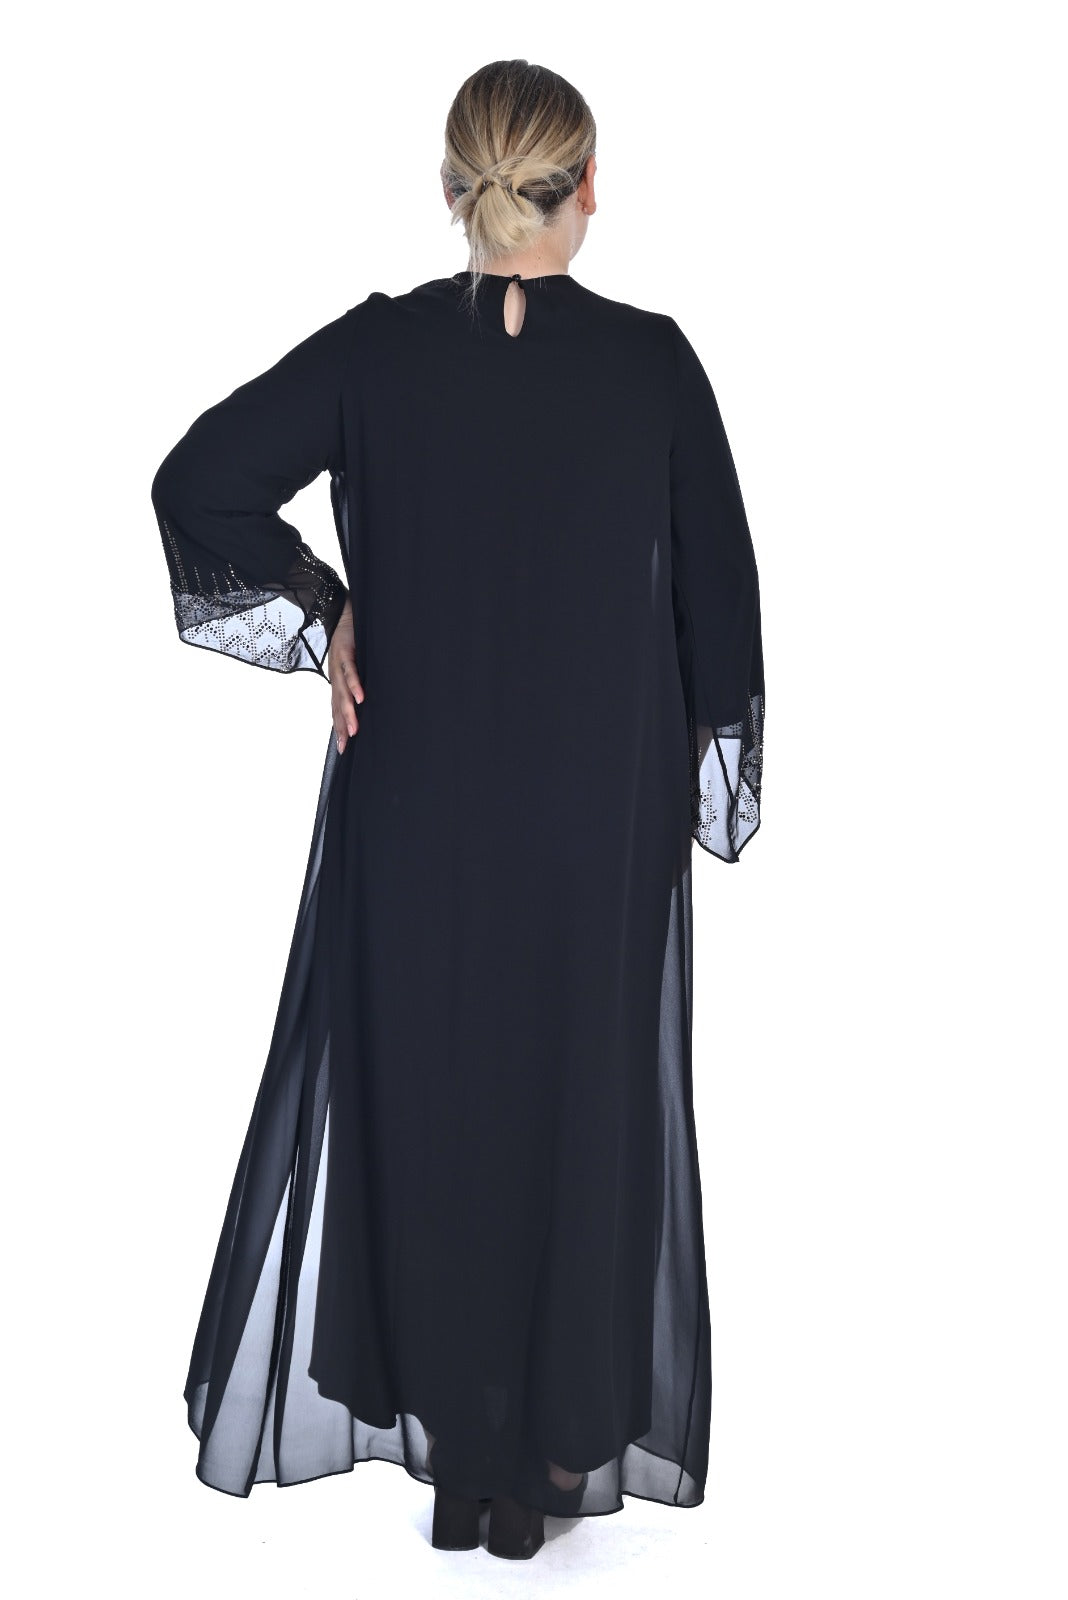 Women's evening dress "Elisa" 6442